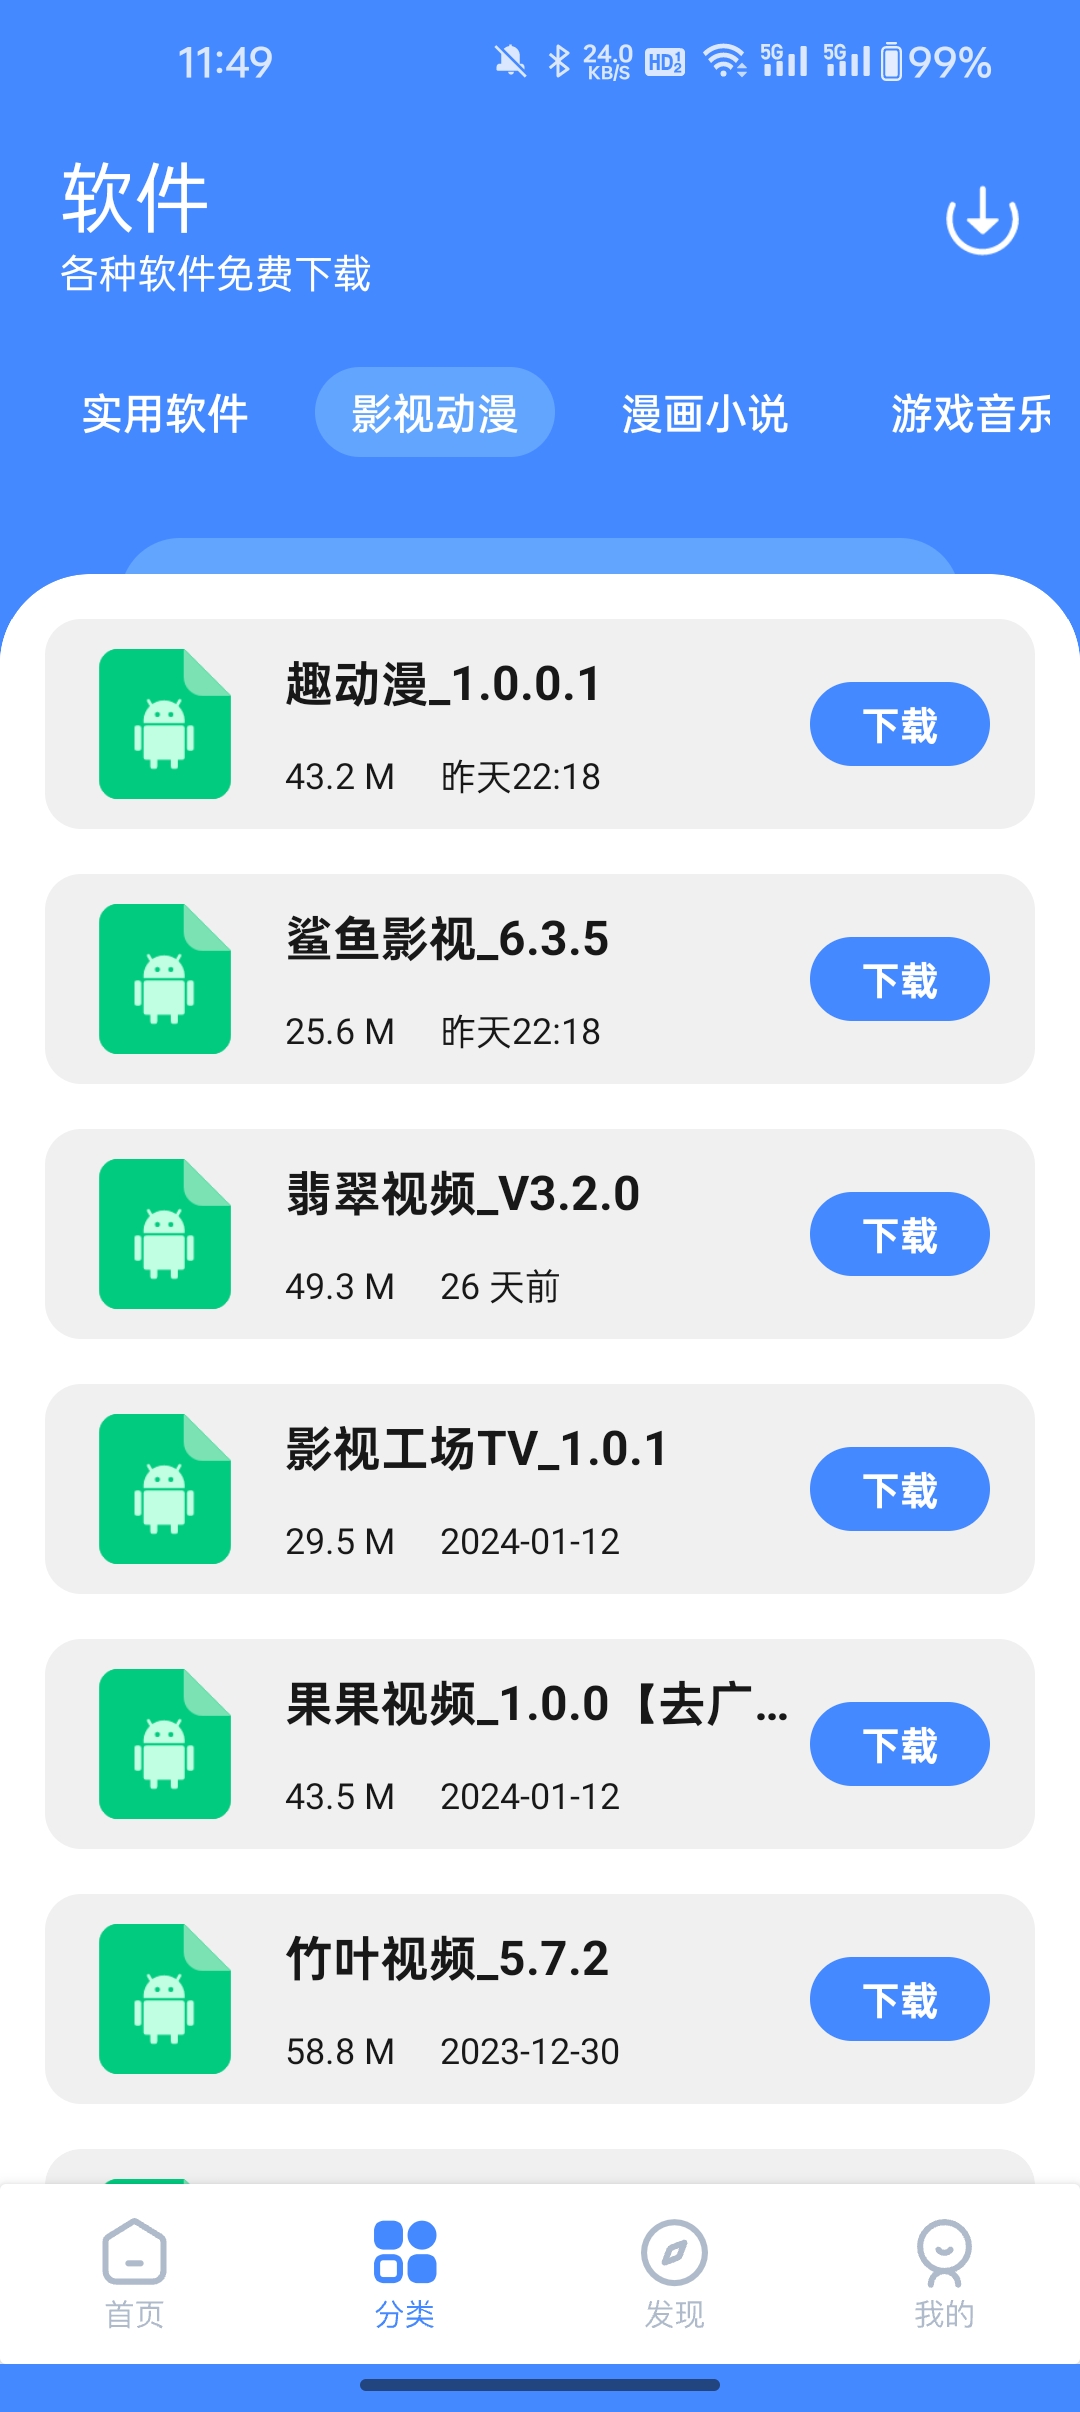 梦凡同学软件库v1.0